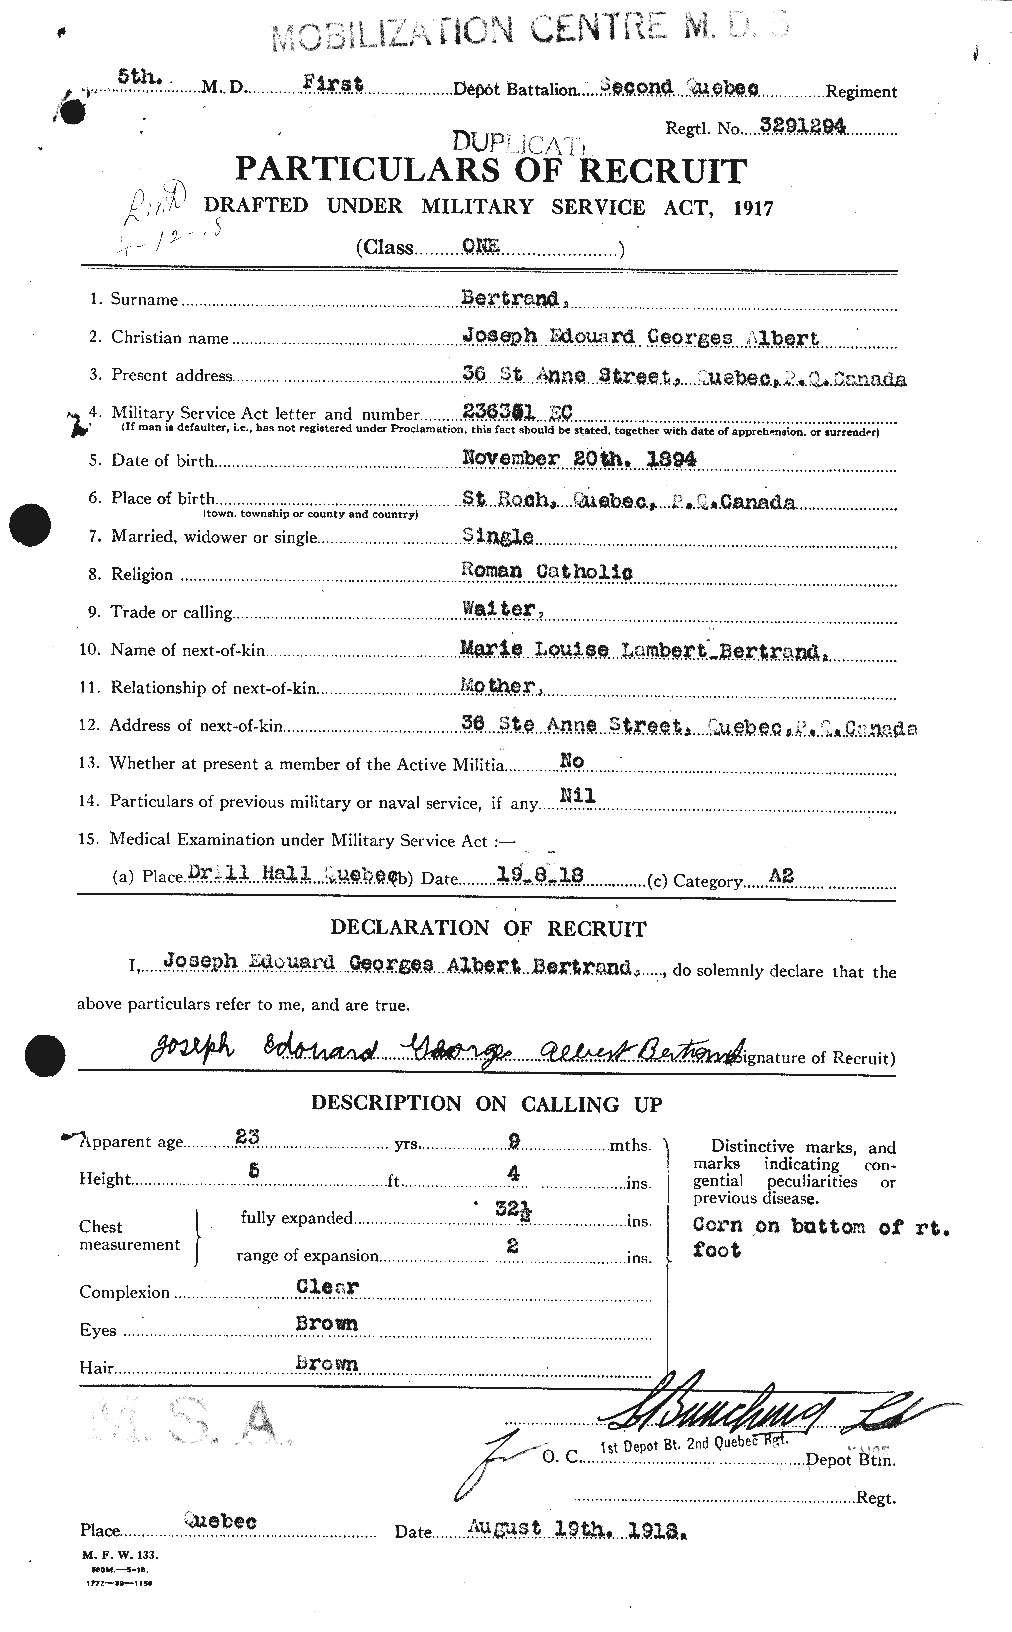 Dossiers du Personnel de la Première Guerre mondiale - CEC 238798a